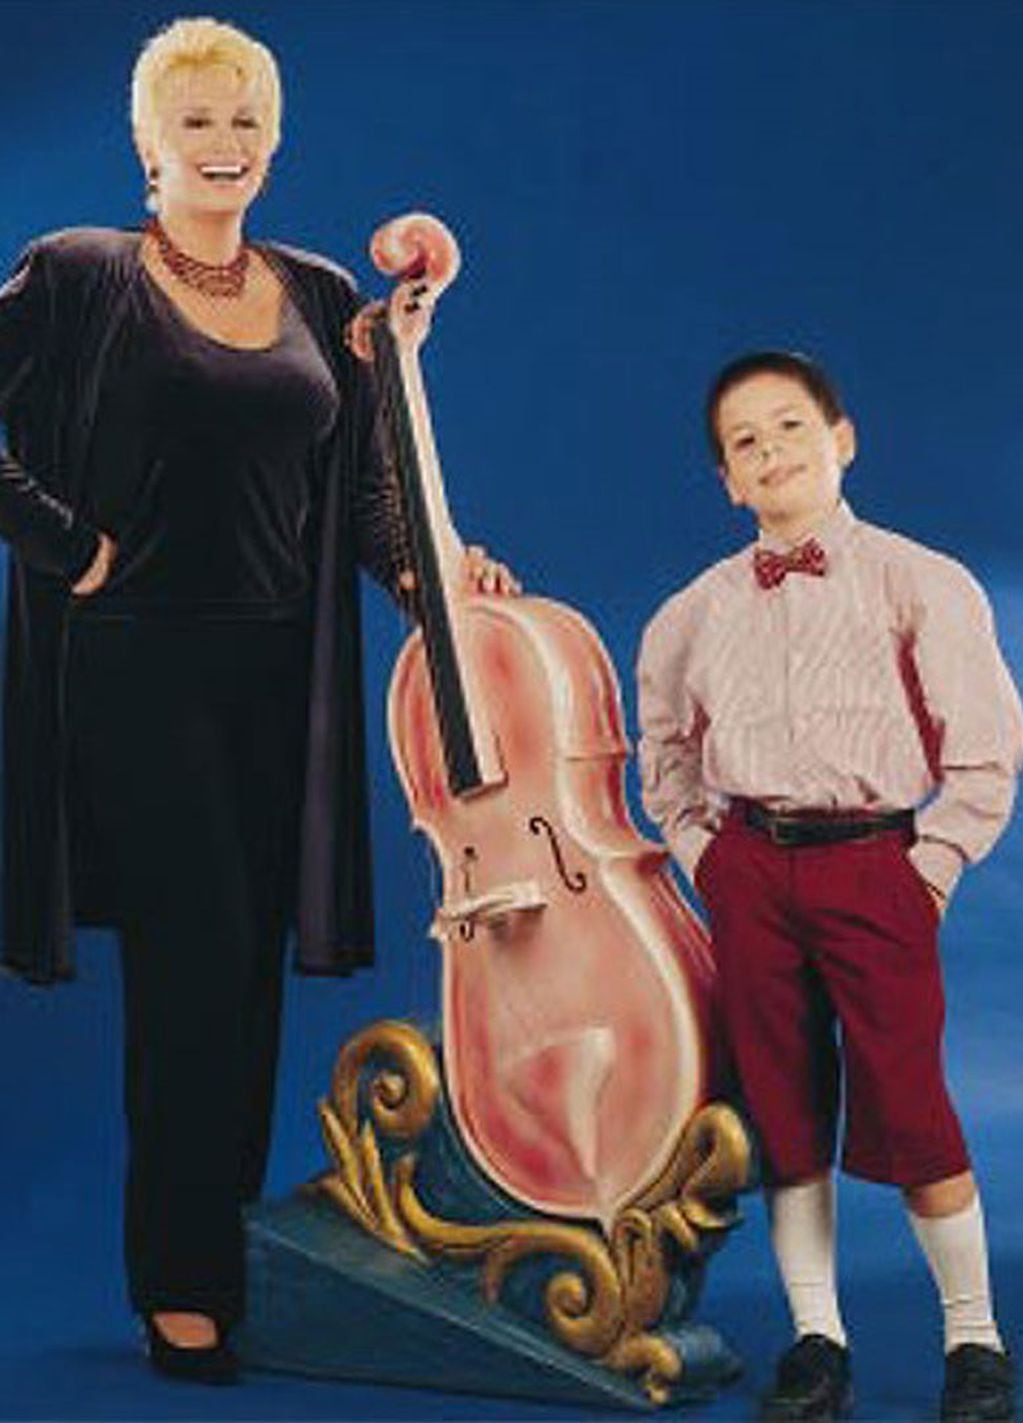 Una foto de Fede Bal de niño con su mamá